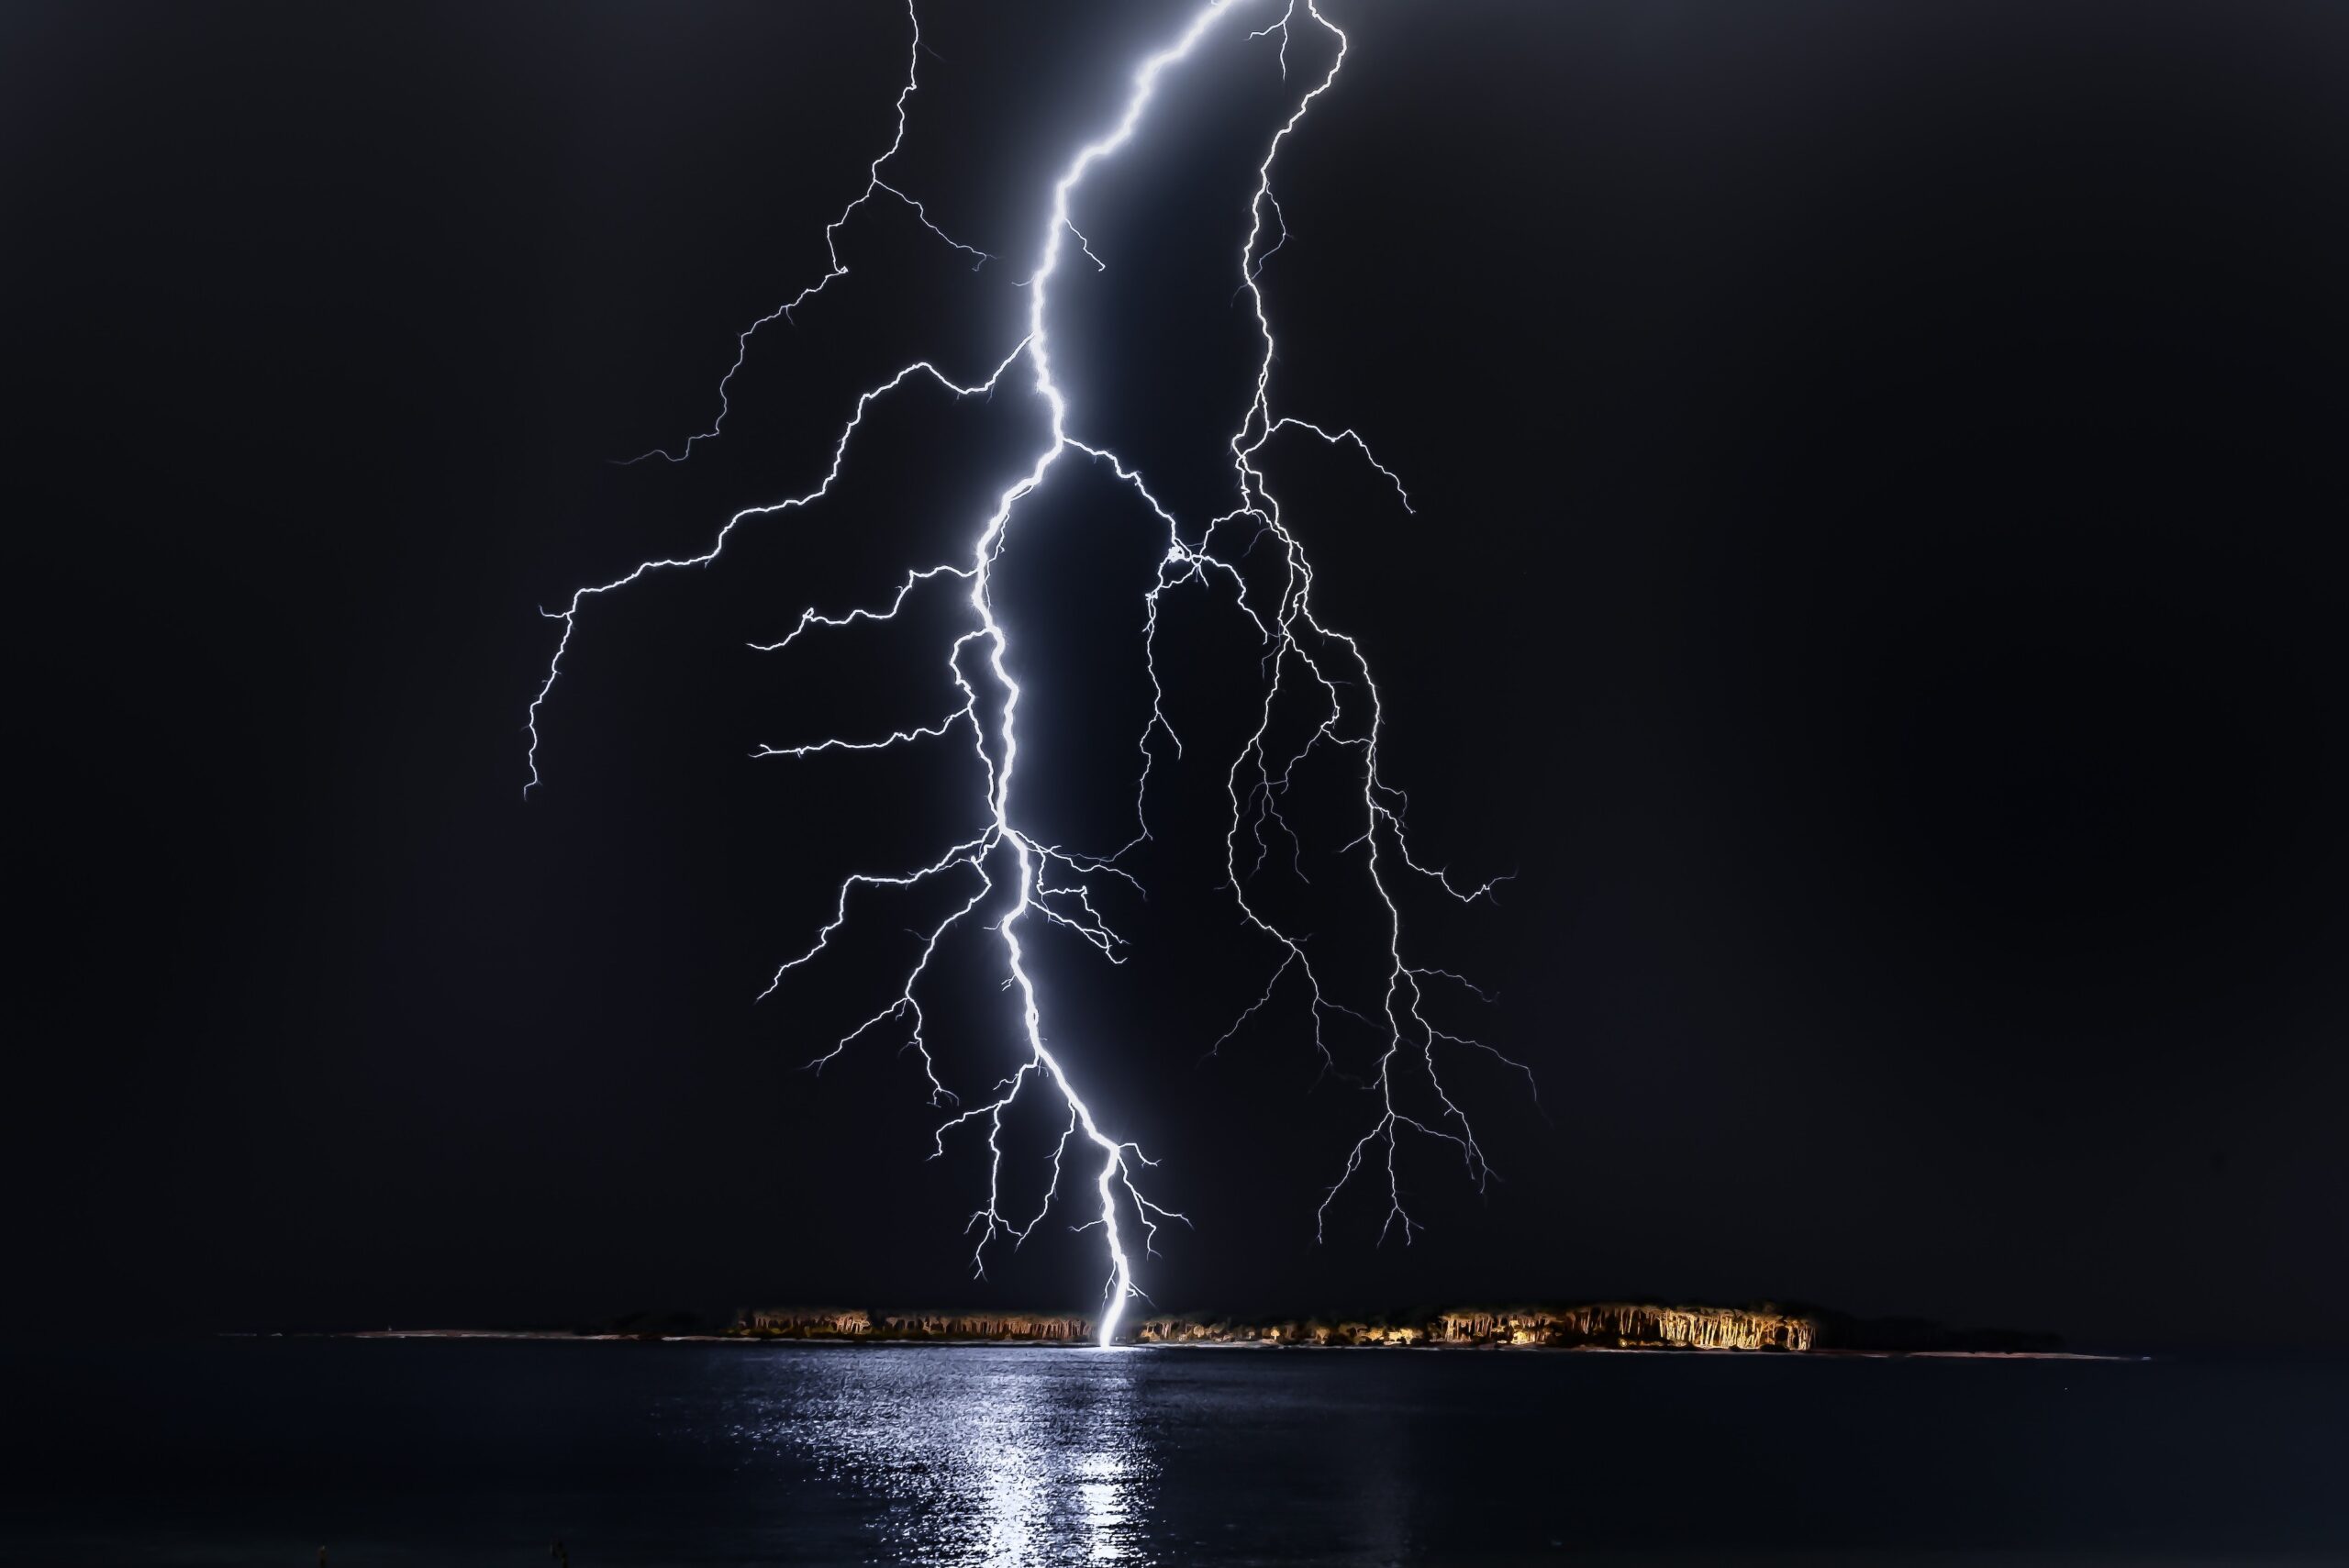 lightning striking the ocean at night